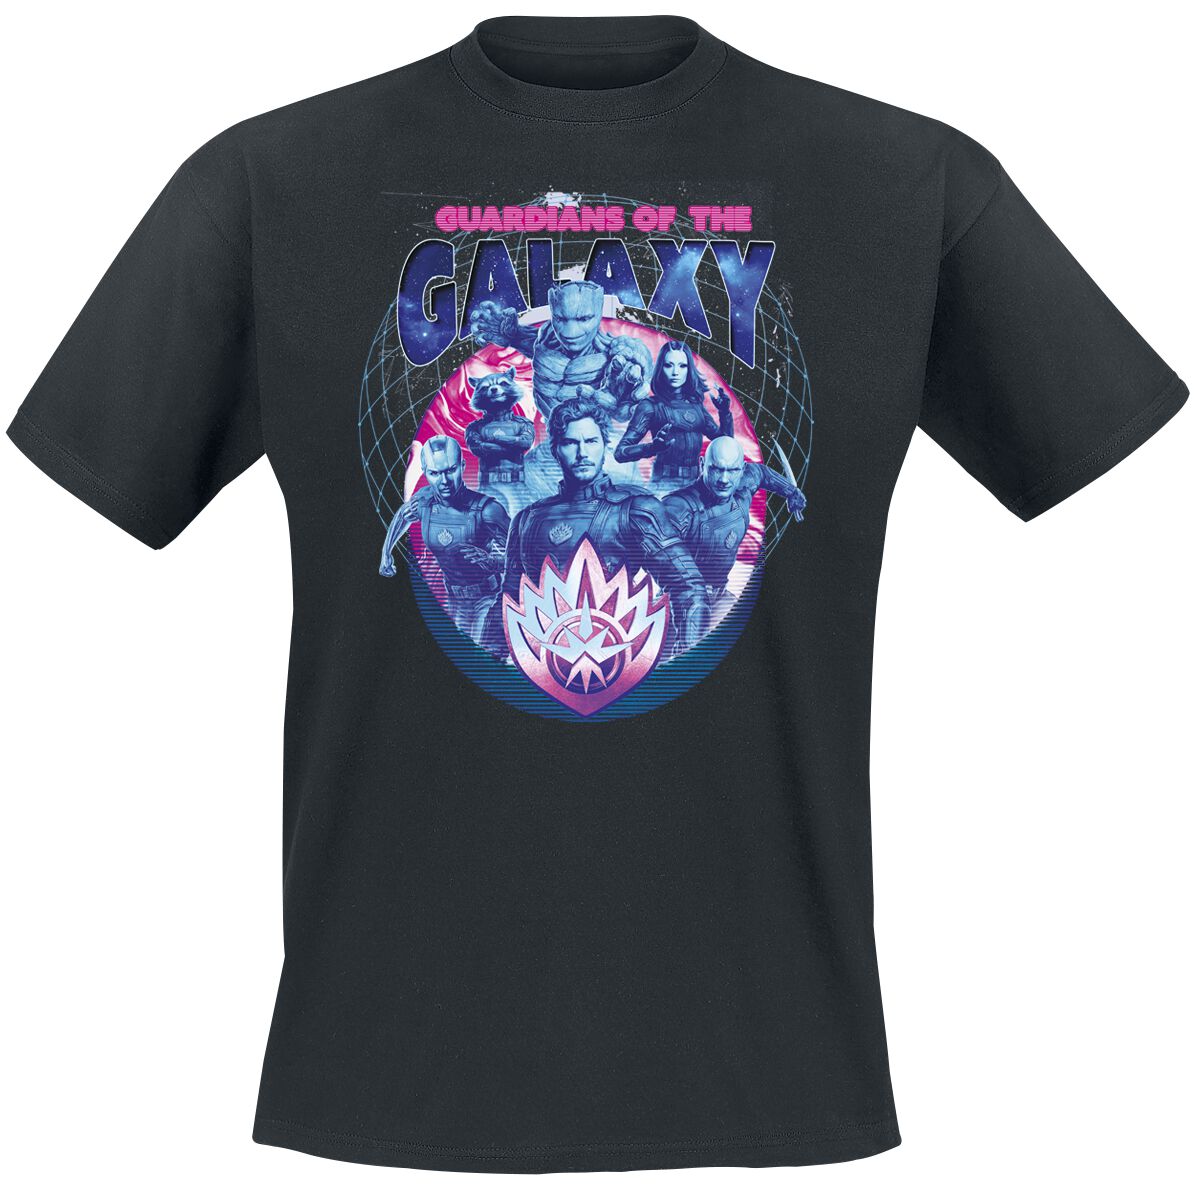 Guardians Of The Galaxy - Marvel T-Shirt - Vol. 3 - Guardians - S bis XXL - für Männer - Größe S - schwarz  - EMP exklusives Merchandise!